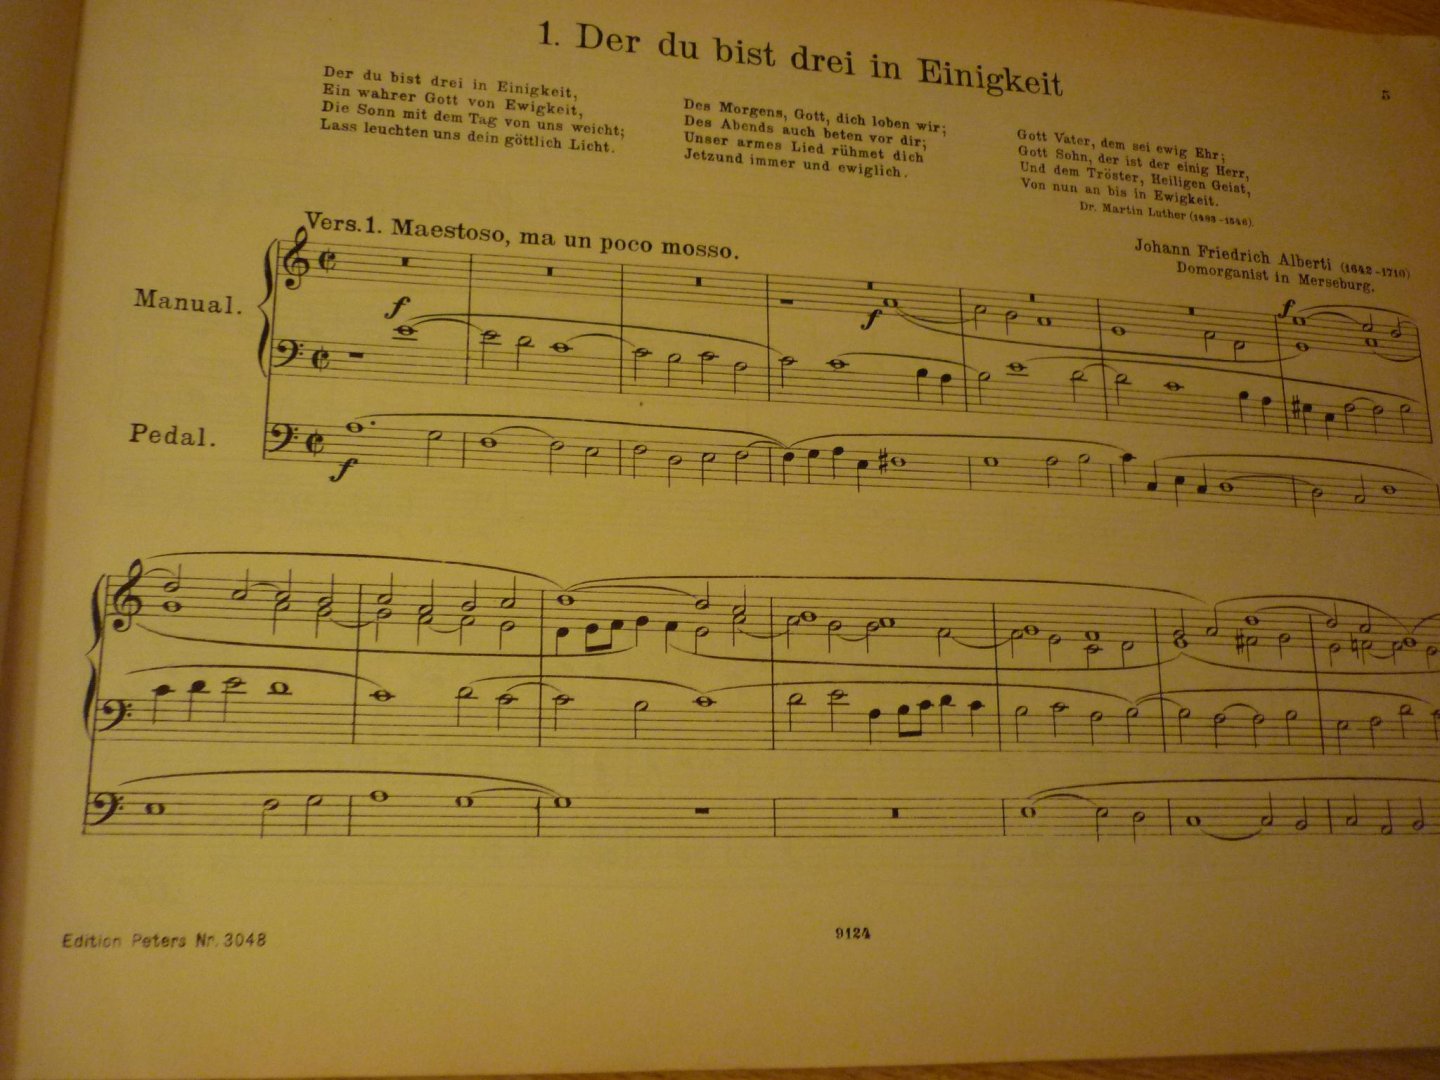 Diverse componisten - Choralvorspiele alter Meister - Orgel; (Straube)